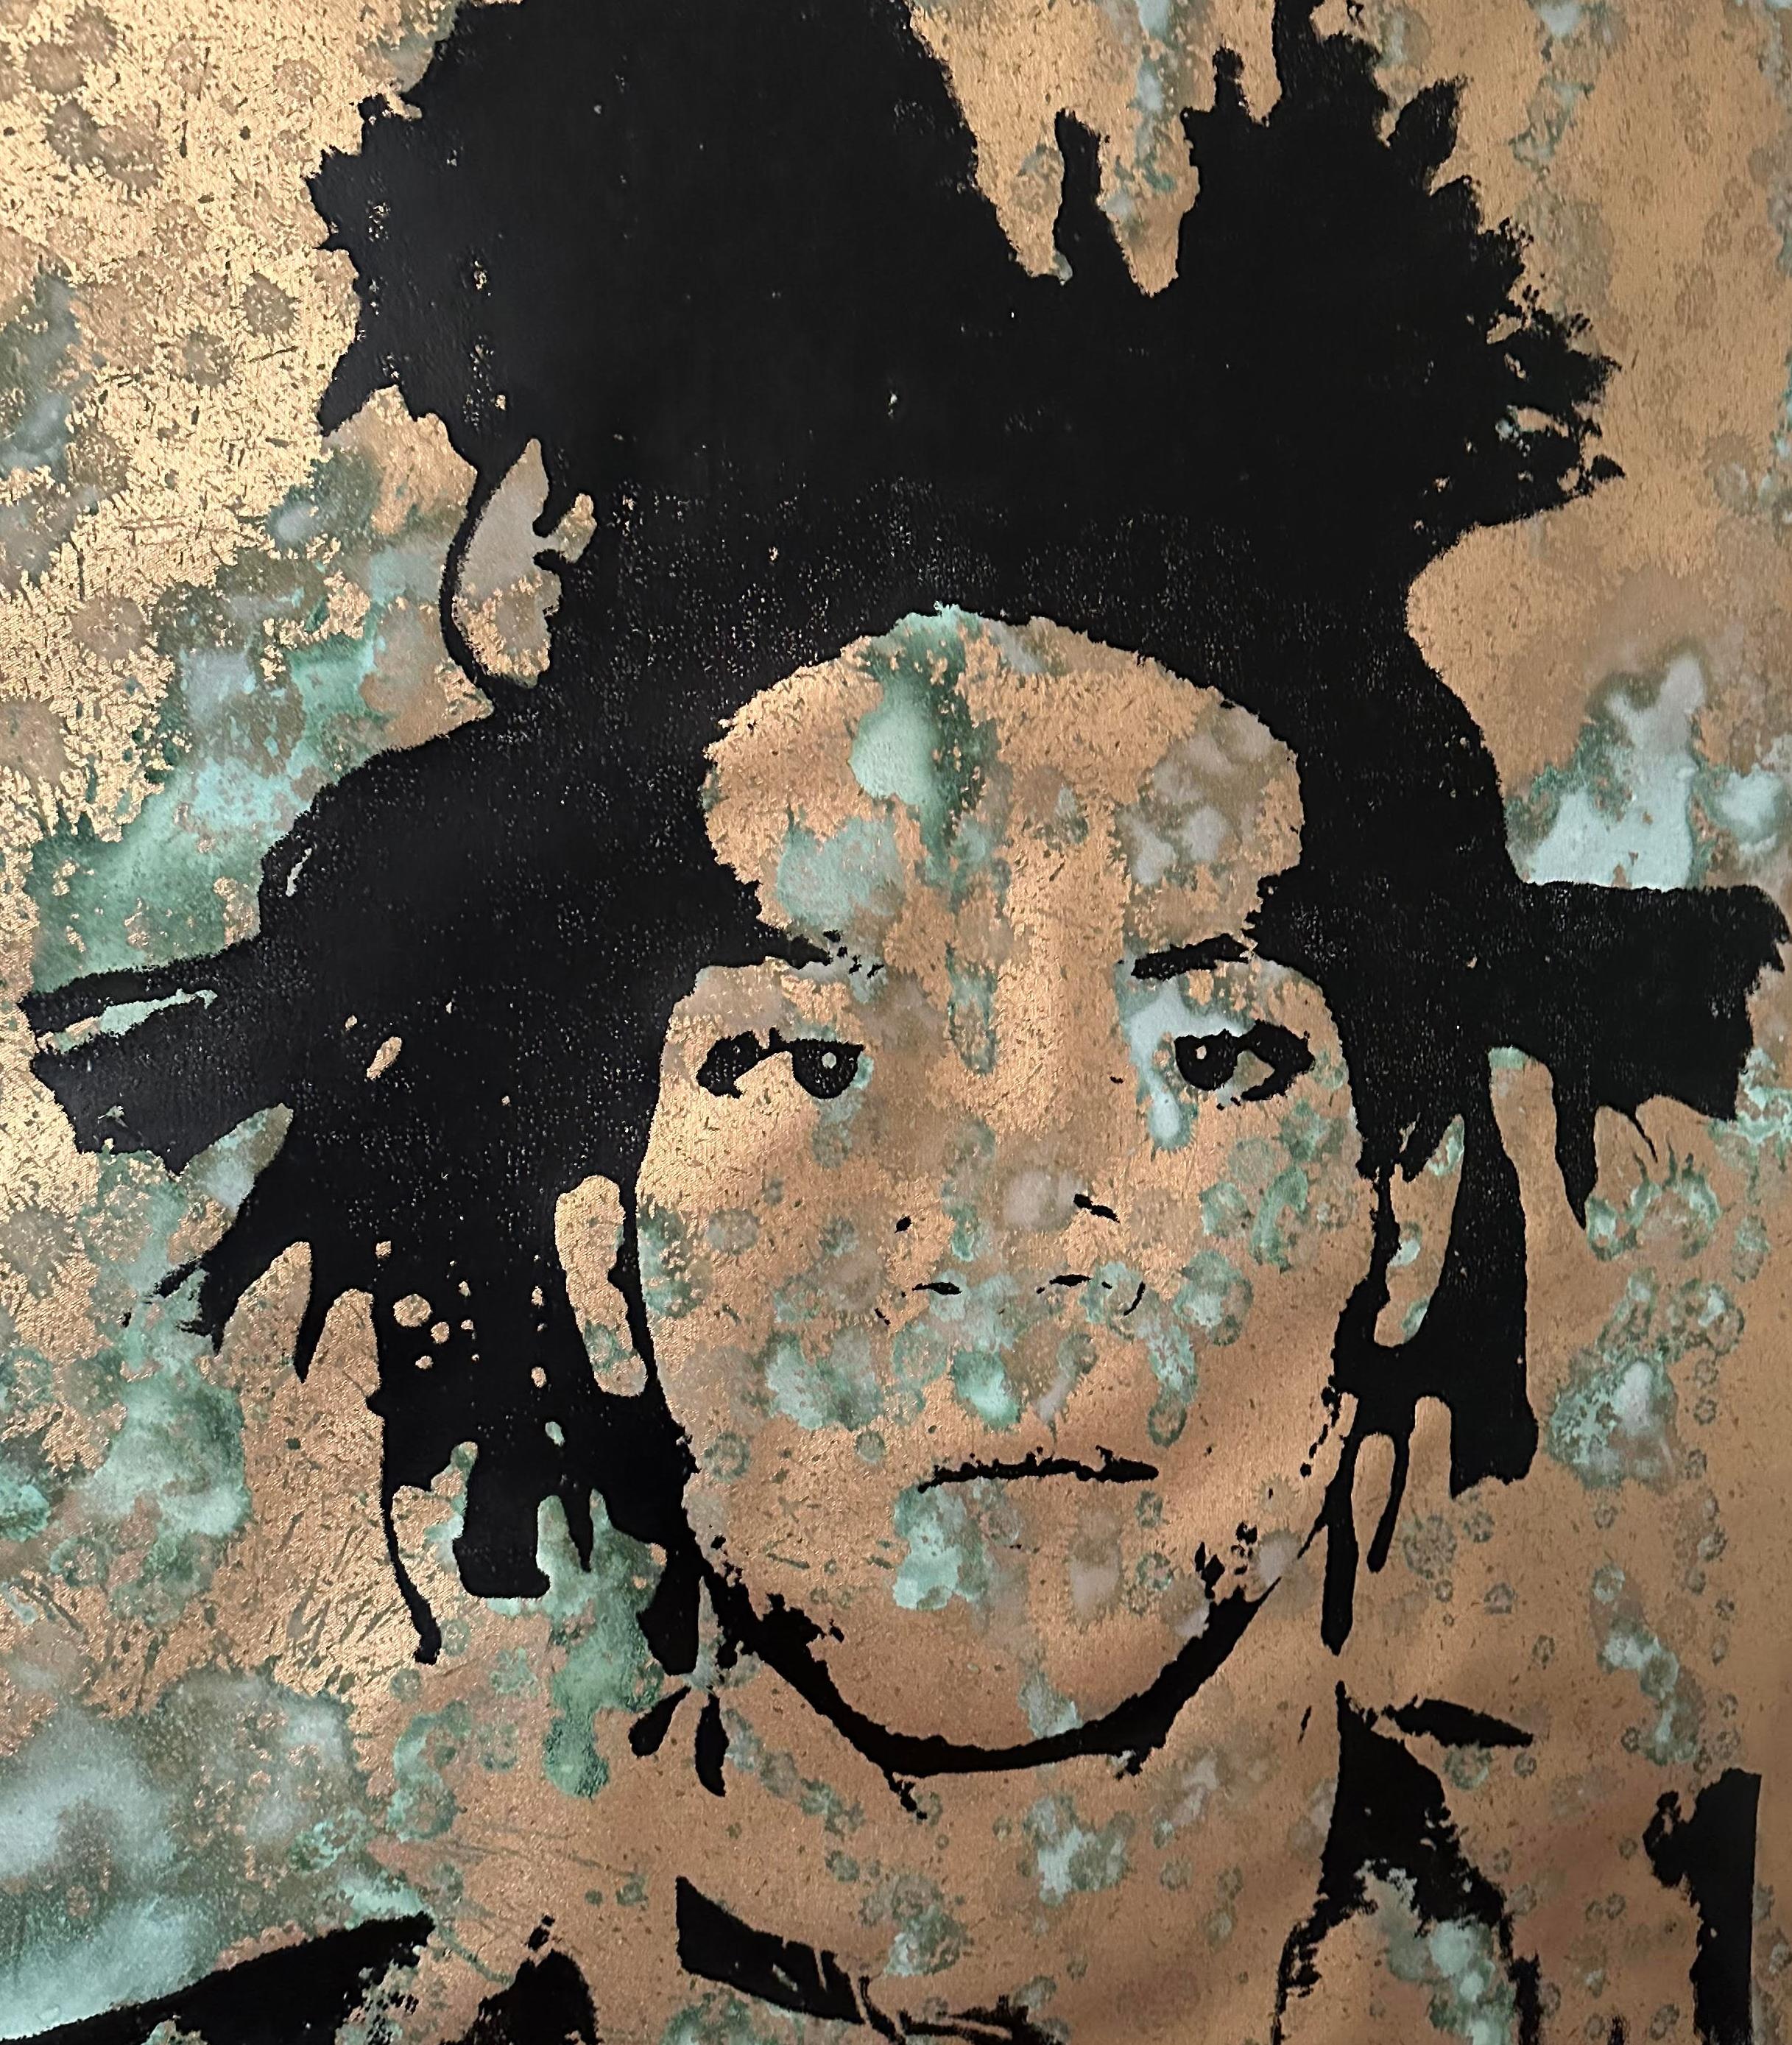 Denied Warhol Jean-Michel Basquiat Siebdruck auf Leinwand von Charles Lutz
Siebdruck und oxidierte Metallpigmente in Acryl auf Leinwand mit dem Denied-Stempel des Andy Warhol Art Authentication Board. 
40 x 40